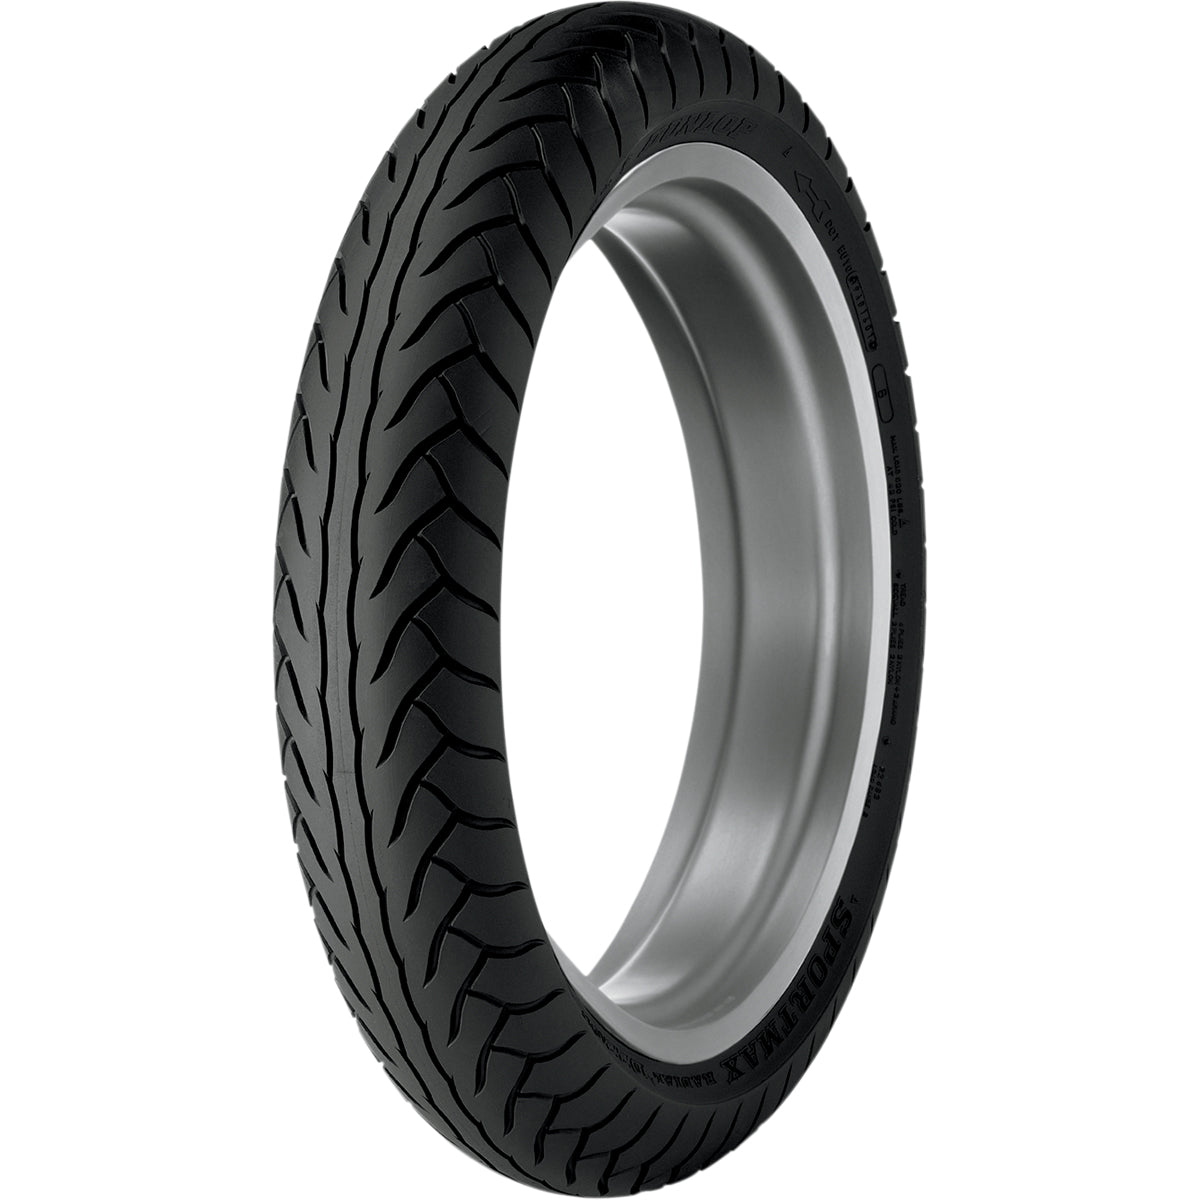 Dunlop D220 62H 17" Front Street Tires-3336